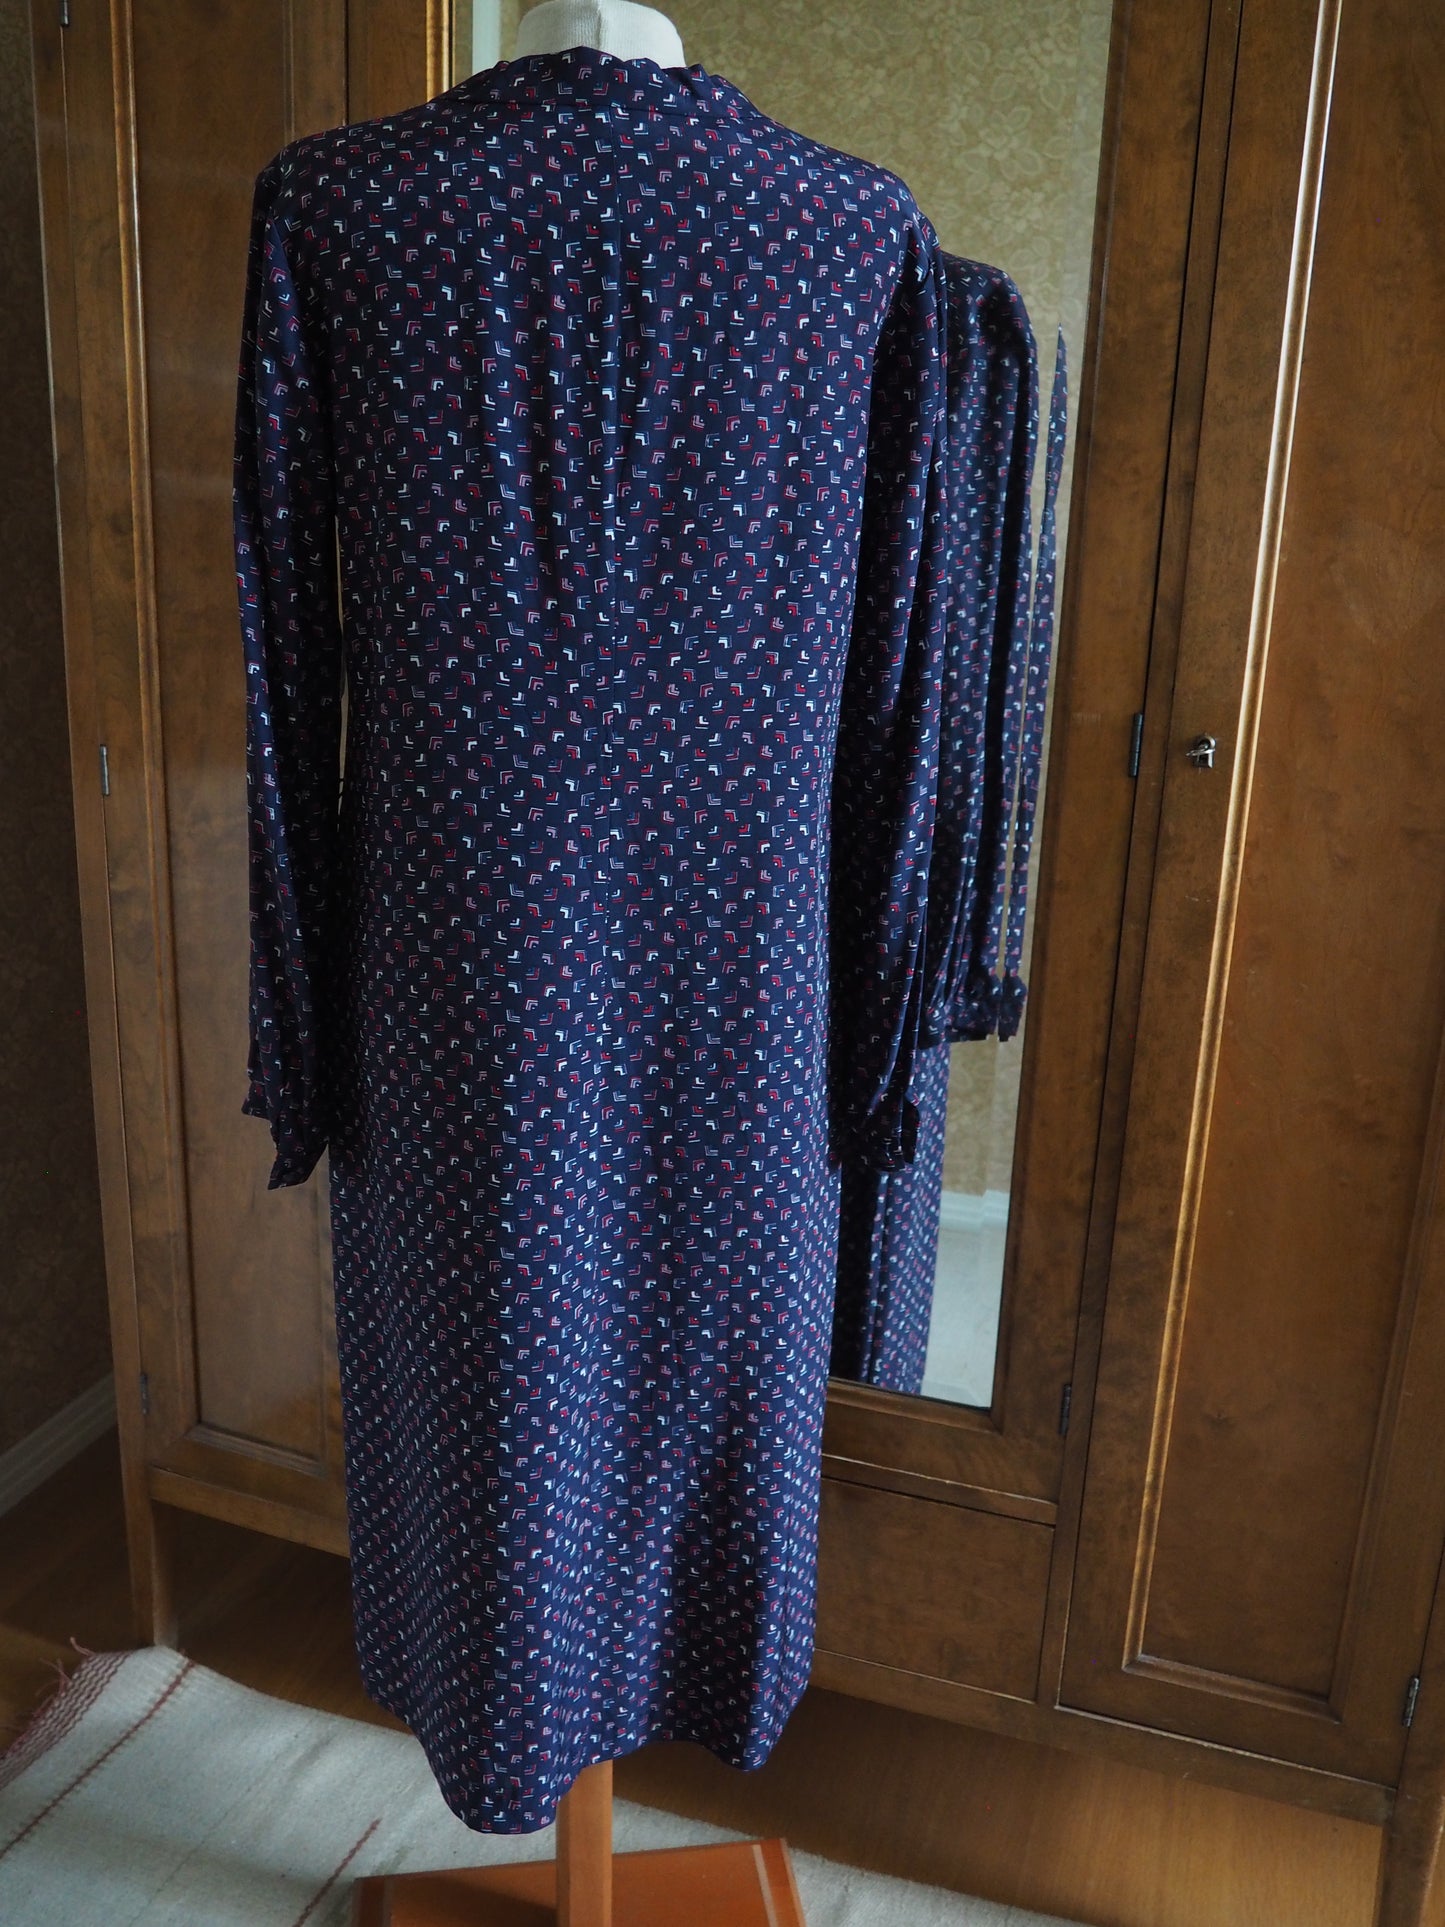 Tummansininen kuviollinen Carolin Muoti-Hovin mekko, käyttämätöntä vanhaa varastoa